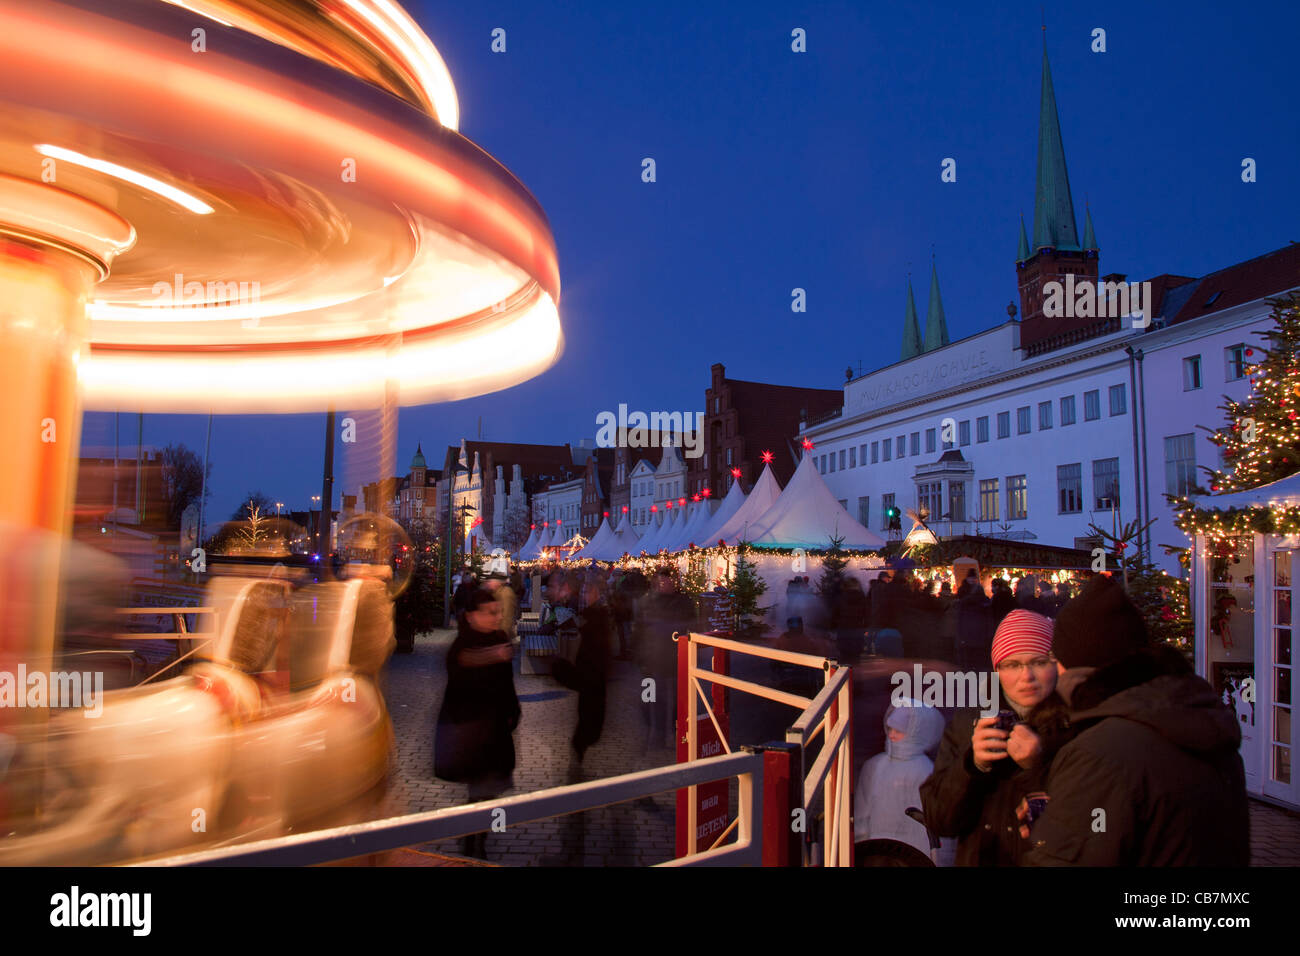 Karussell auf Weihnachtsmarkt in der Hansestadt Lübeck, Obertrave, Deutschland Stockfoto